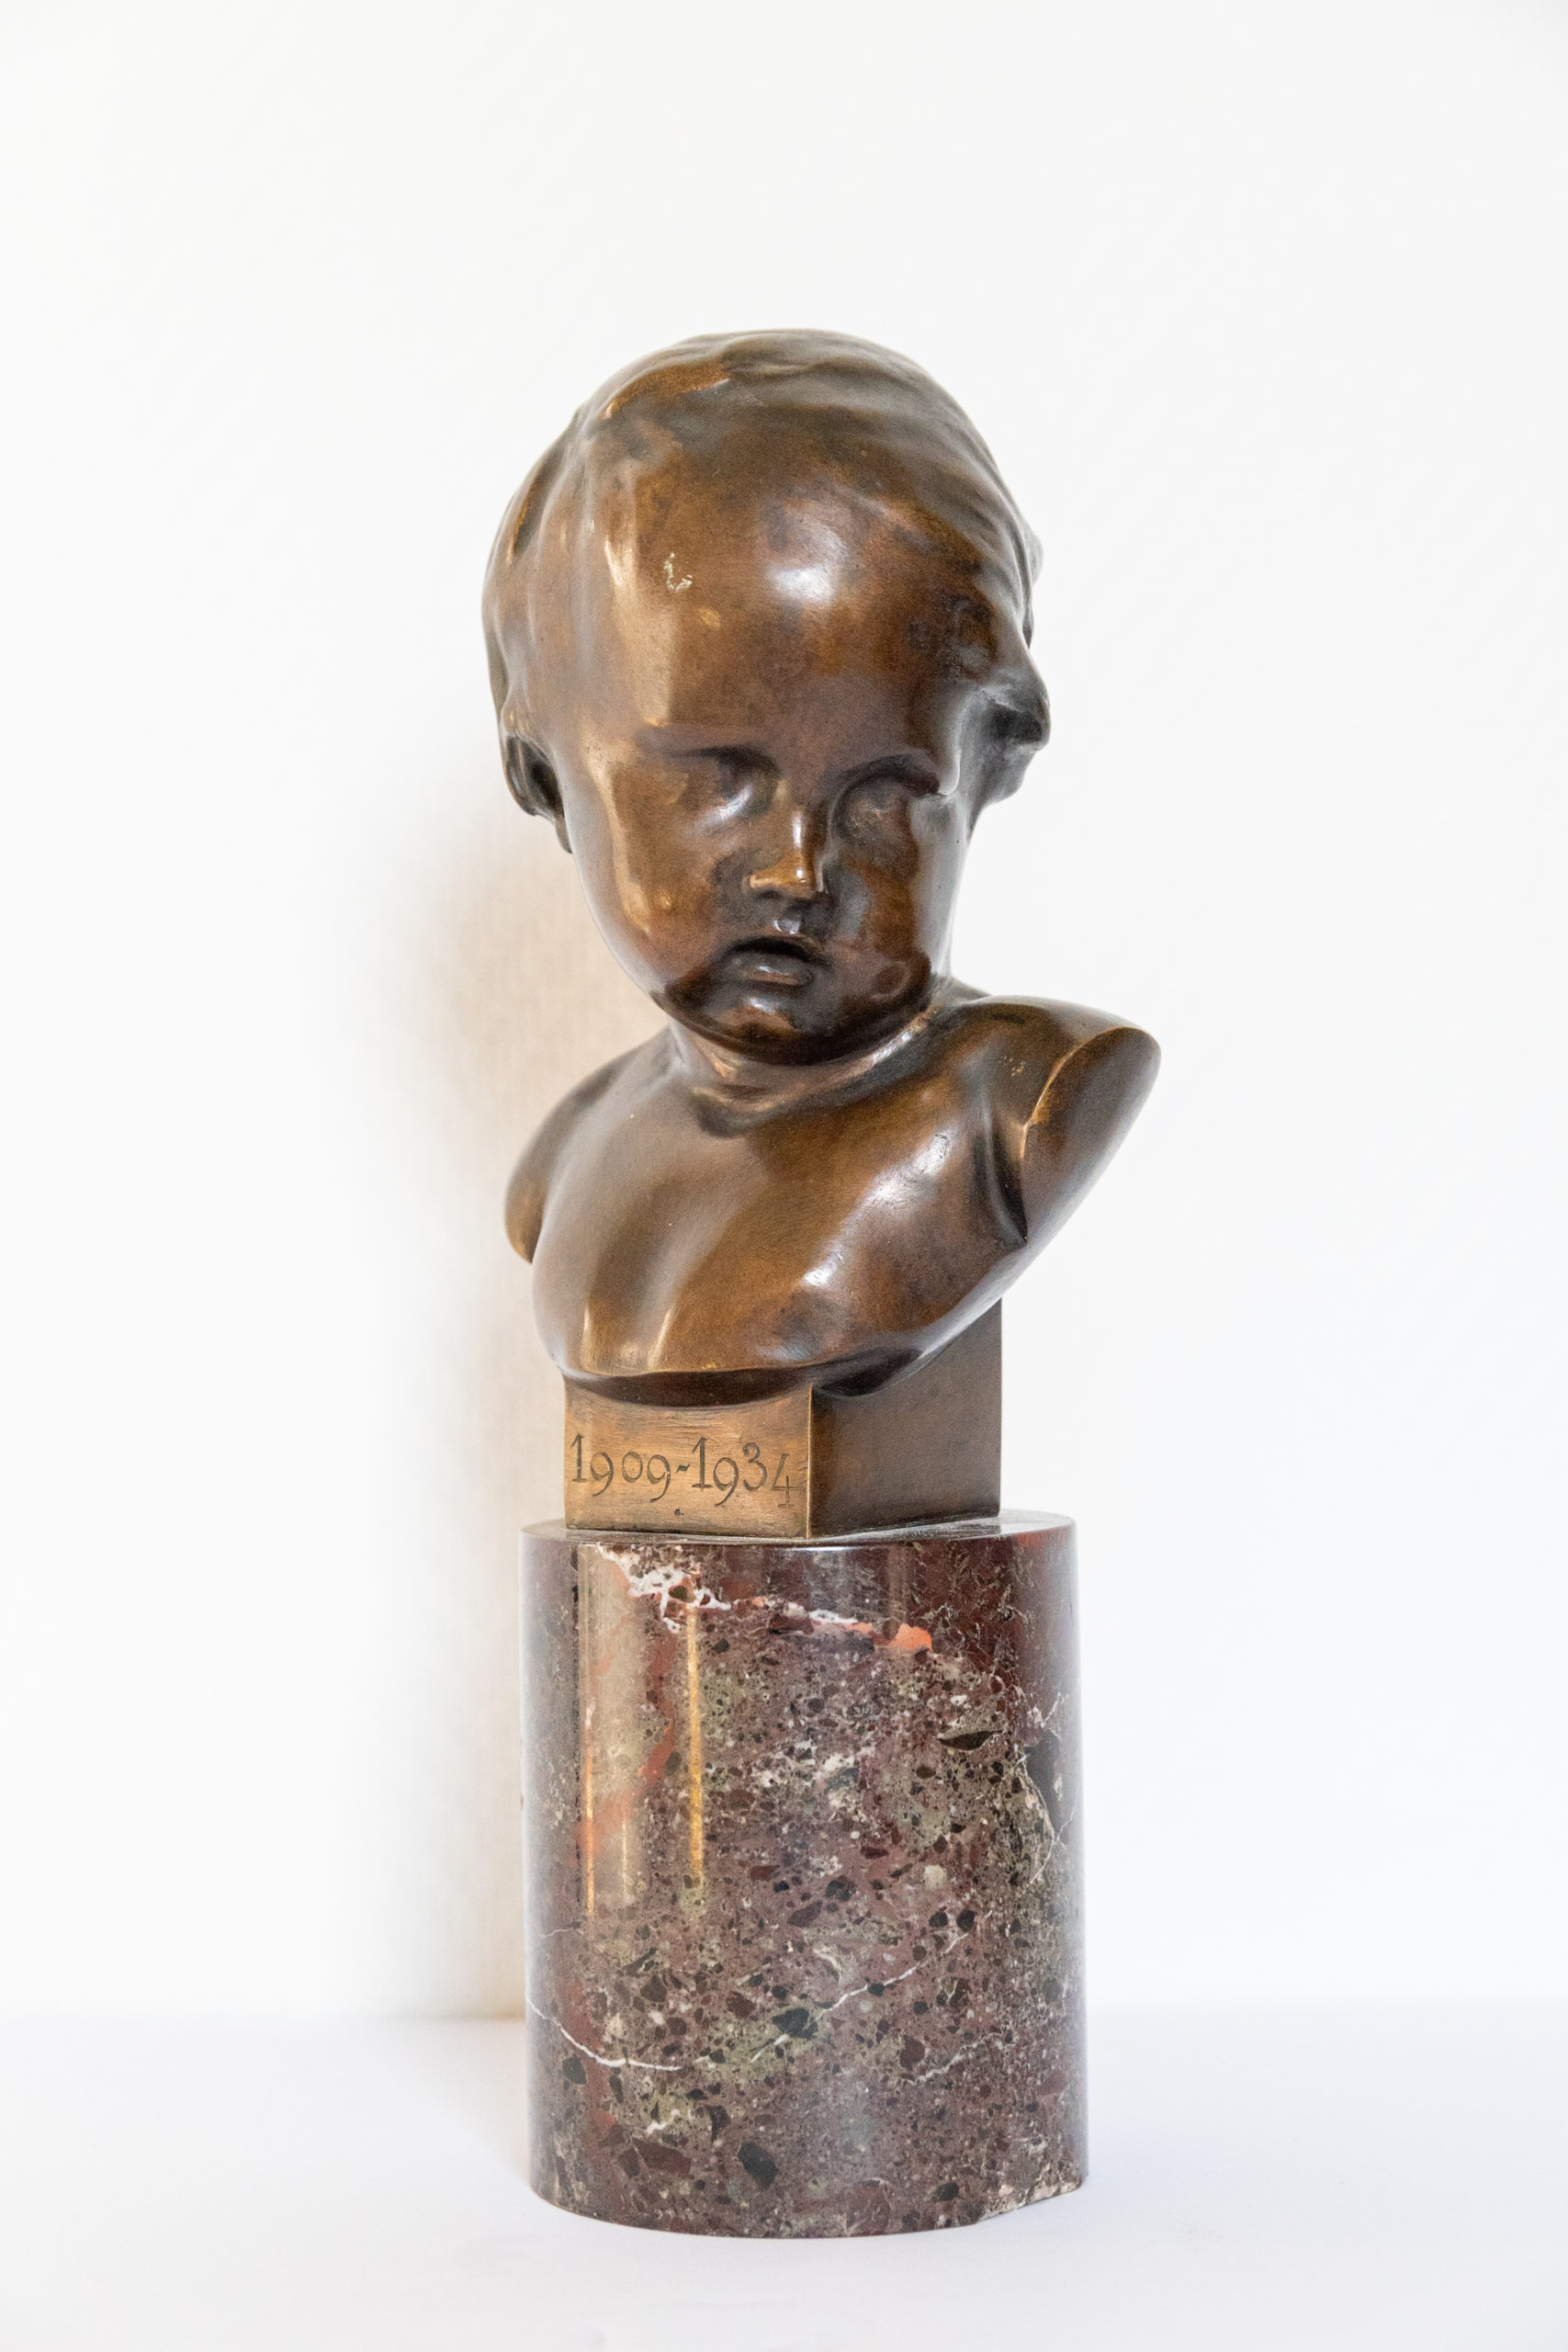 Buste-bronze-enfant-signé-Francois-duquesnoy-antiquité-bronze-aurore-morisse-antiquaire